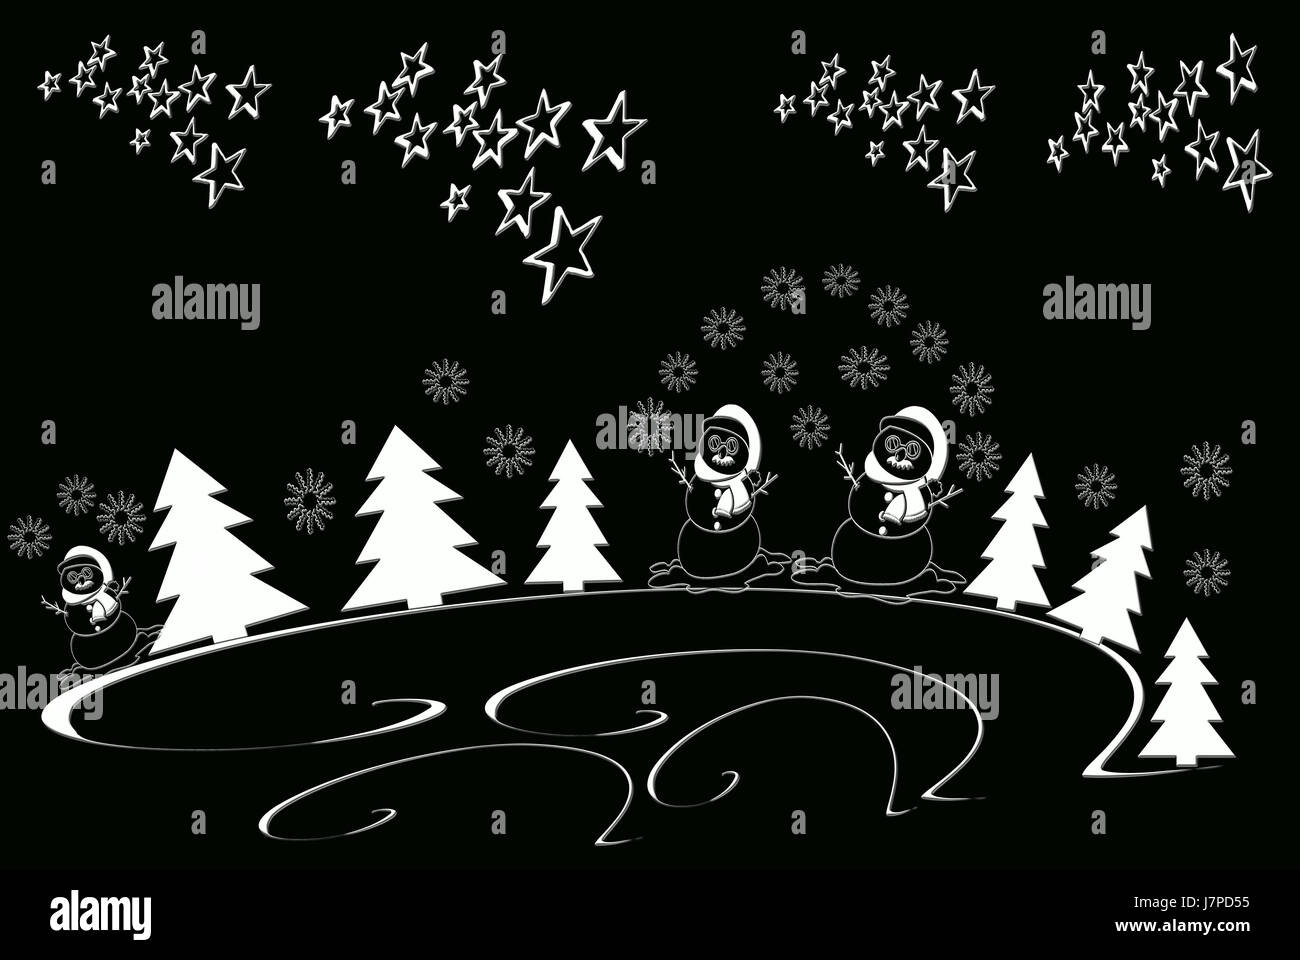 Symbole Weihnachten Karte Weihnachten Weihnachten x-mas schwarze Grafik Advent dunkelhäutigen Stockfoto